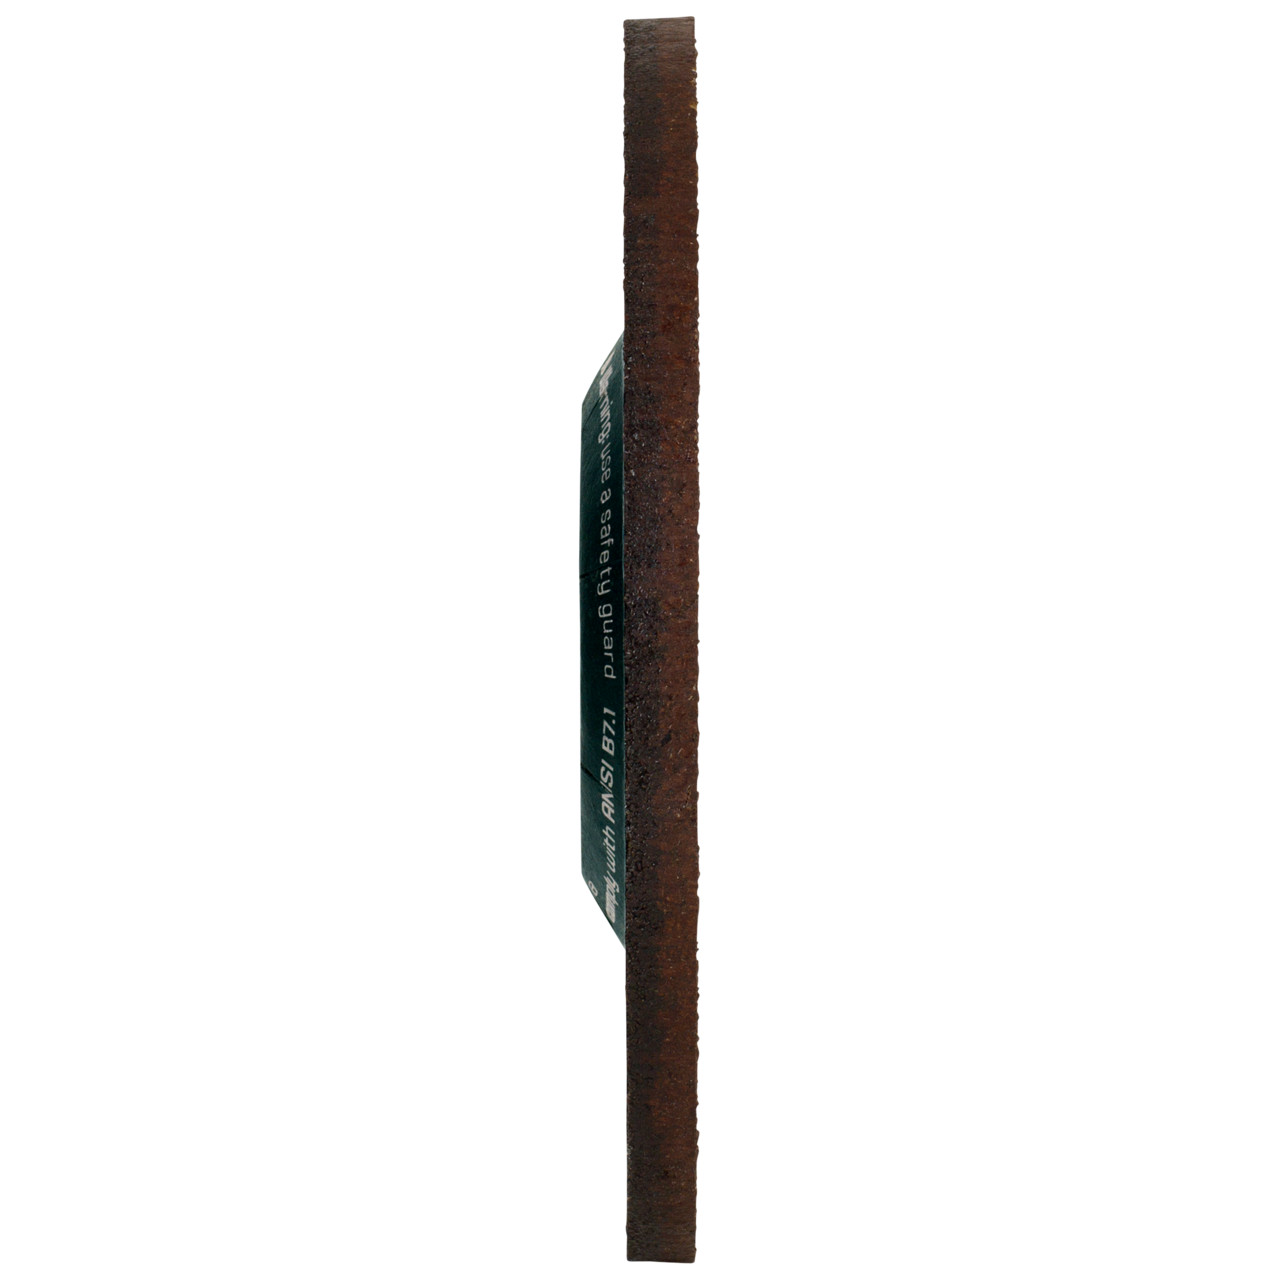 Tyrolit Karhennuslevy DxUxH 178x7x22.23 CERABOND X teräkselle ja ruostumattomalle teräkselle